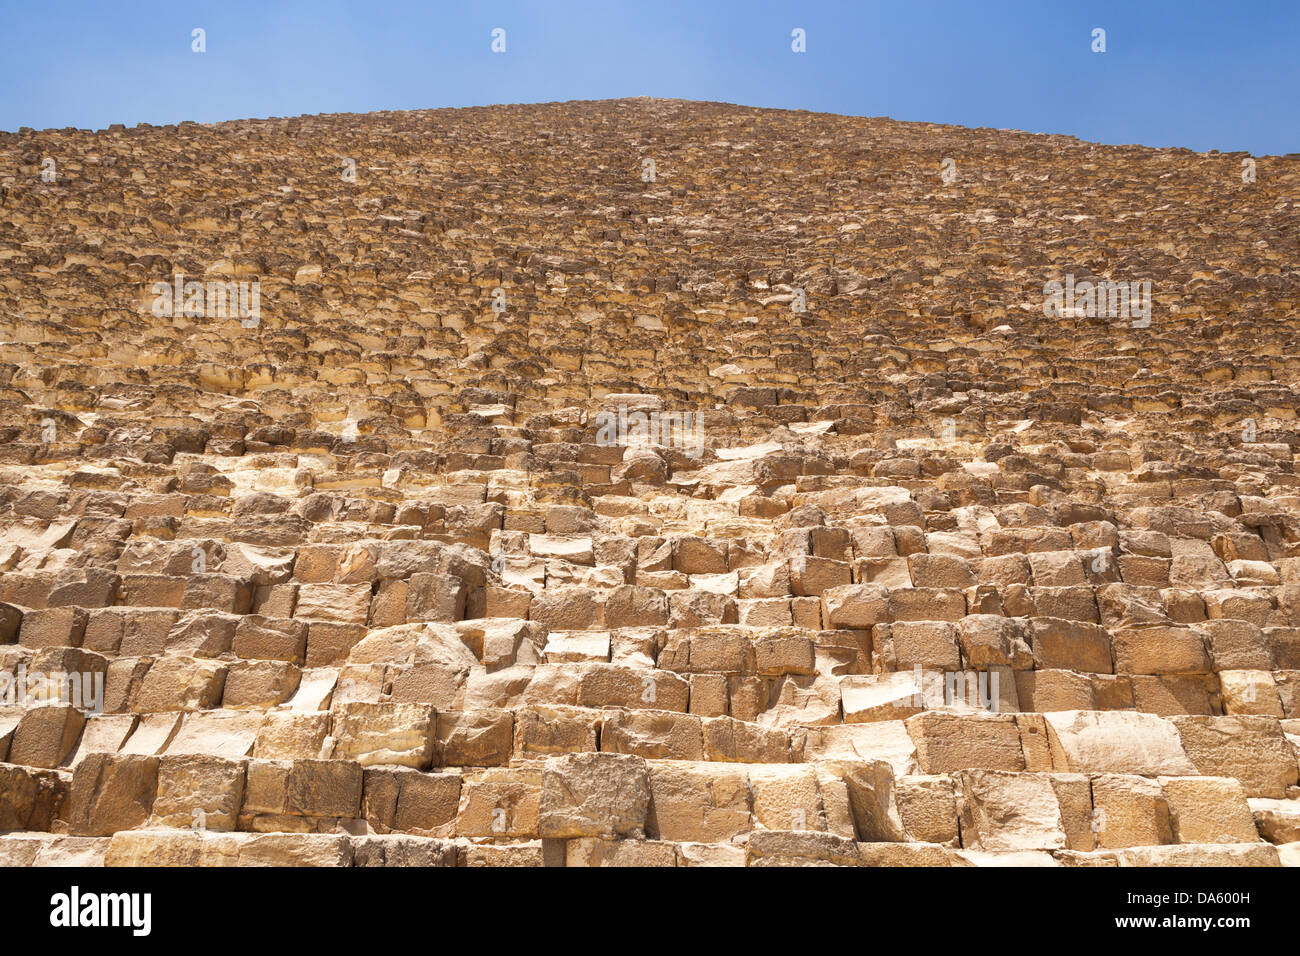 Grande pyramide de Gizeh, également connu sous le nom de pyramide de Chéops et la pyramide de Khéops, à Gizeh, Le Caire, Egypte Banque D'Images